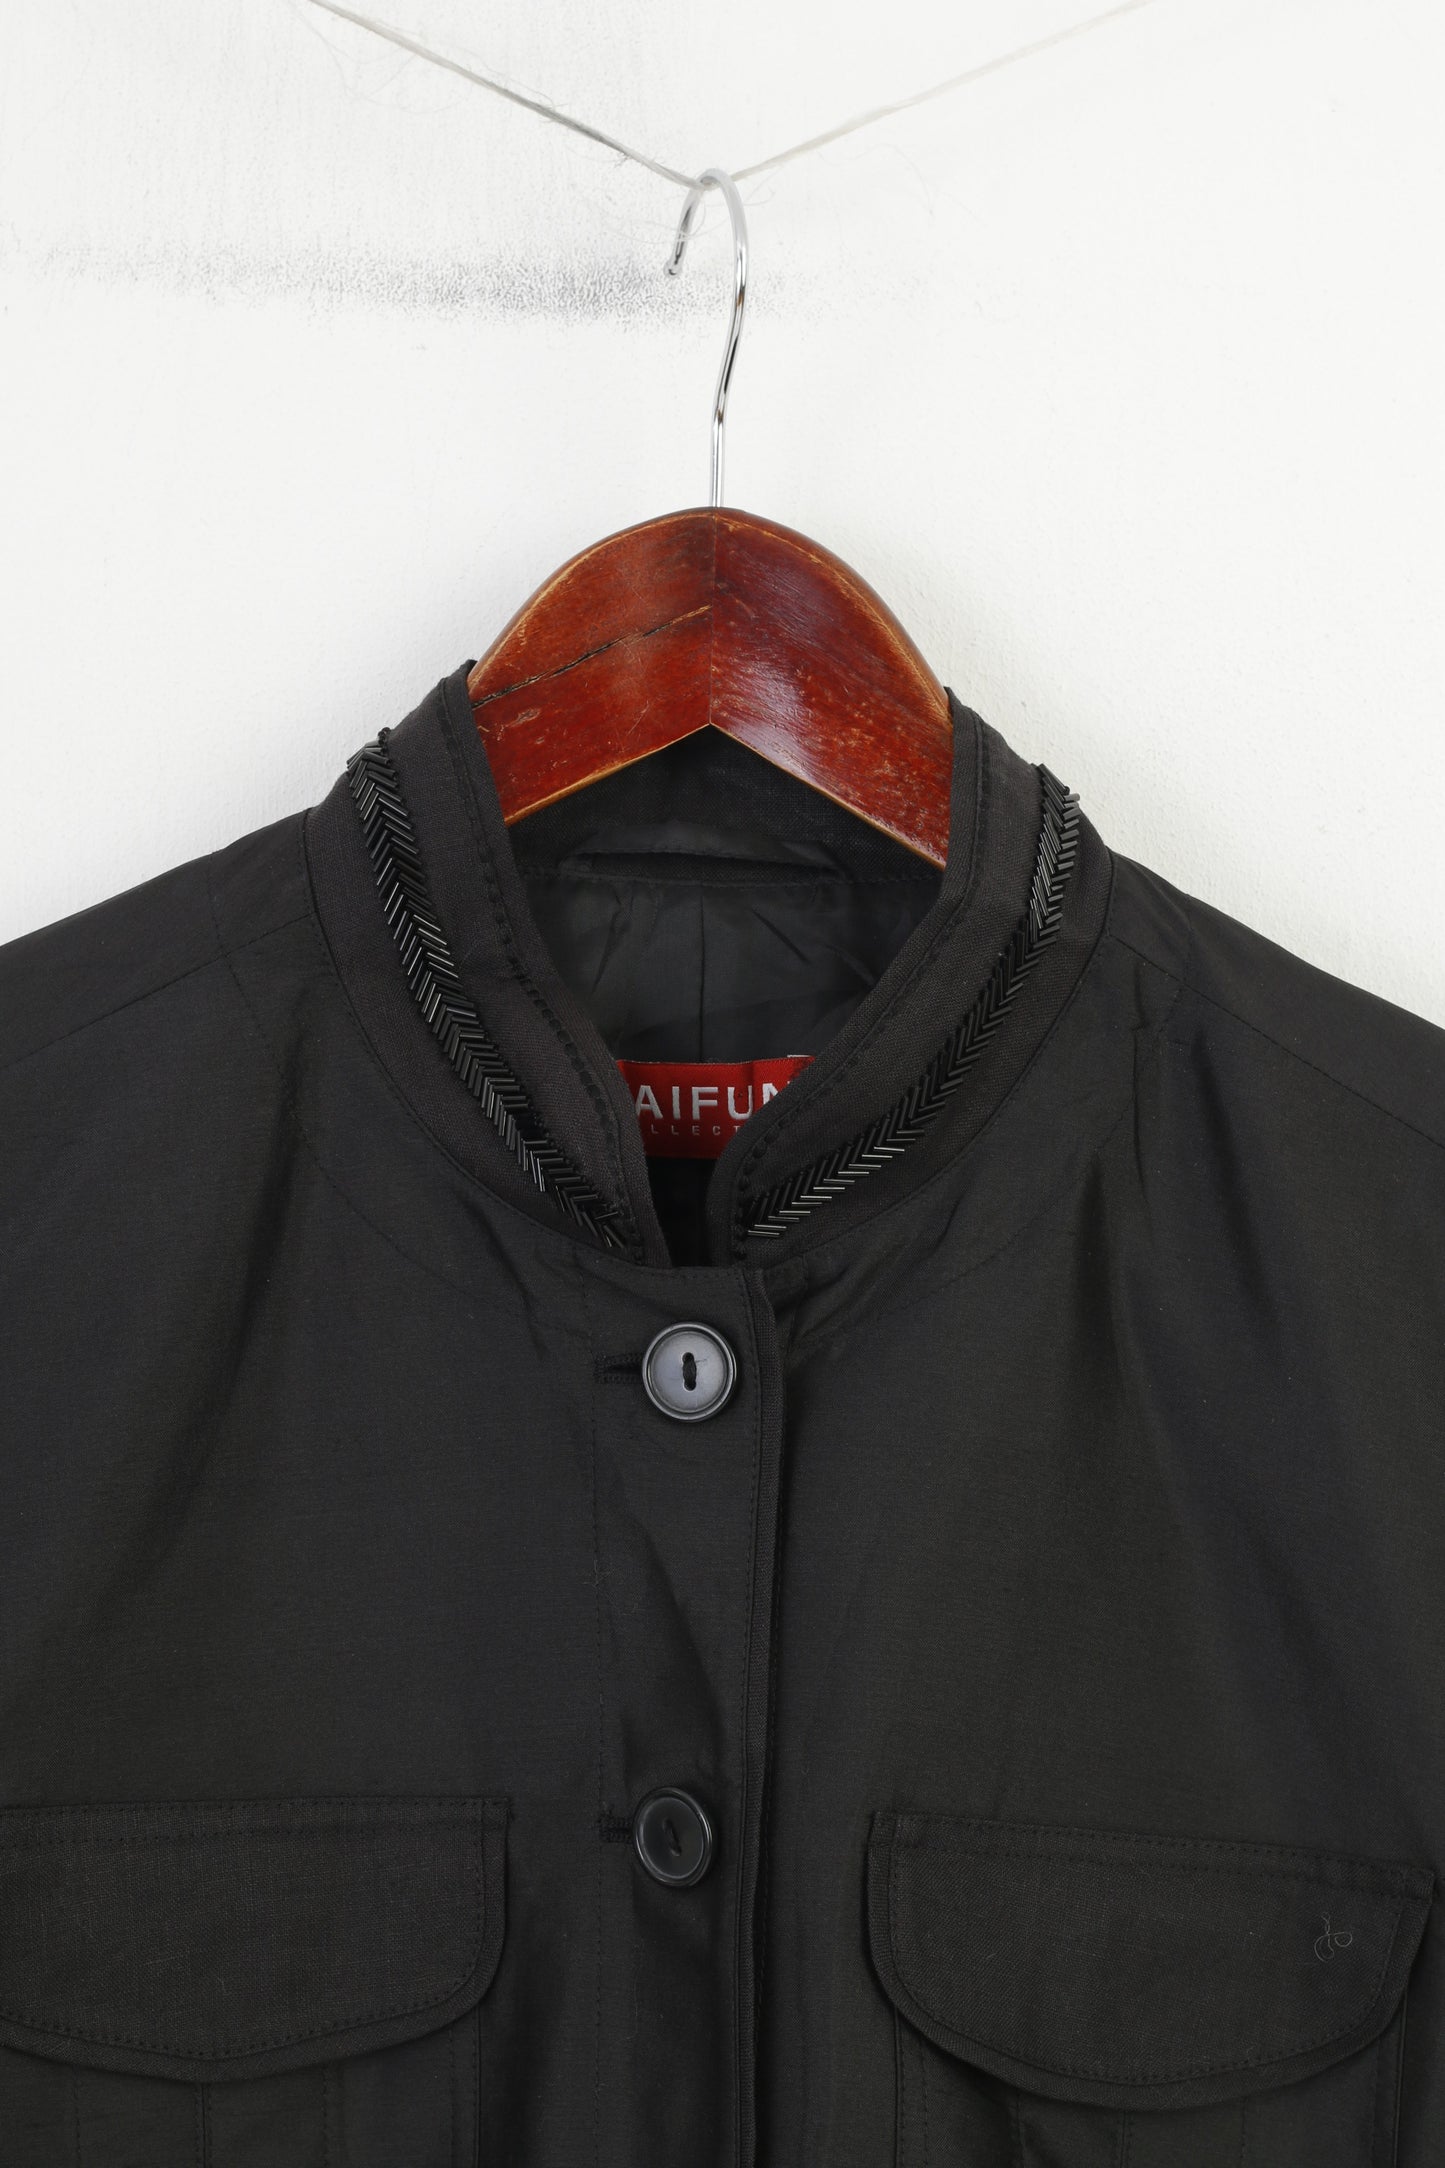 Collezione Taifun Donna 40 M Blazer in seta Giacca tascabile con spalline lucide monopetto nera 